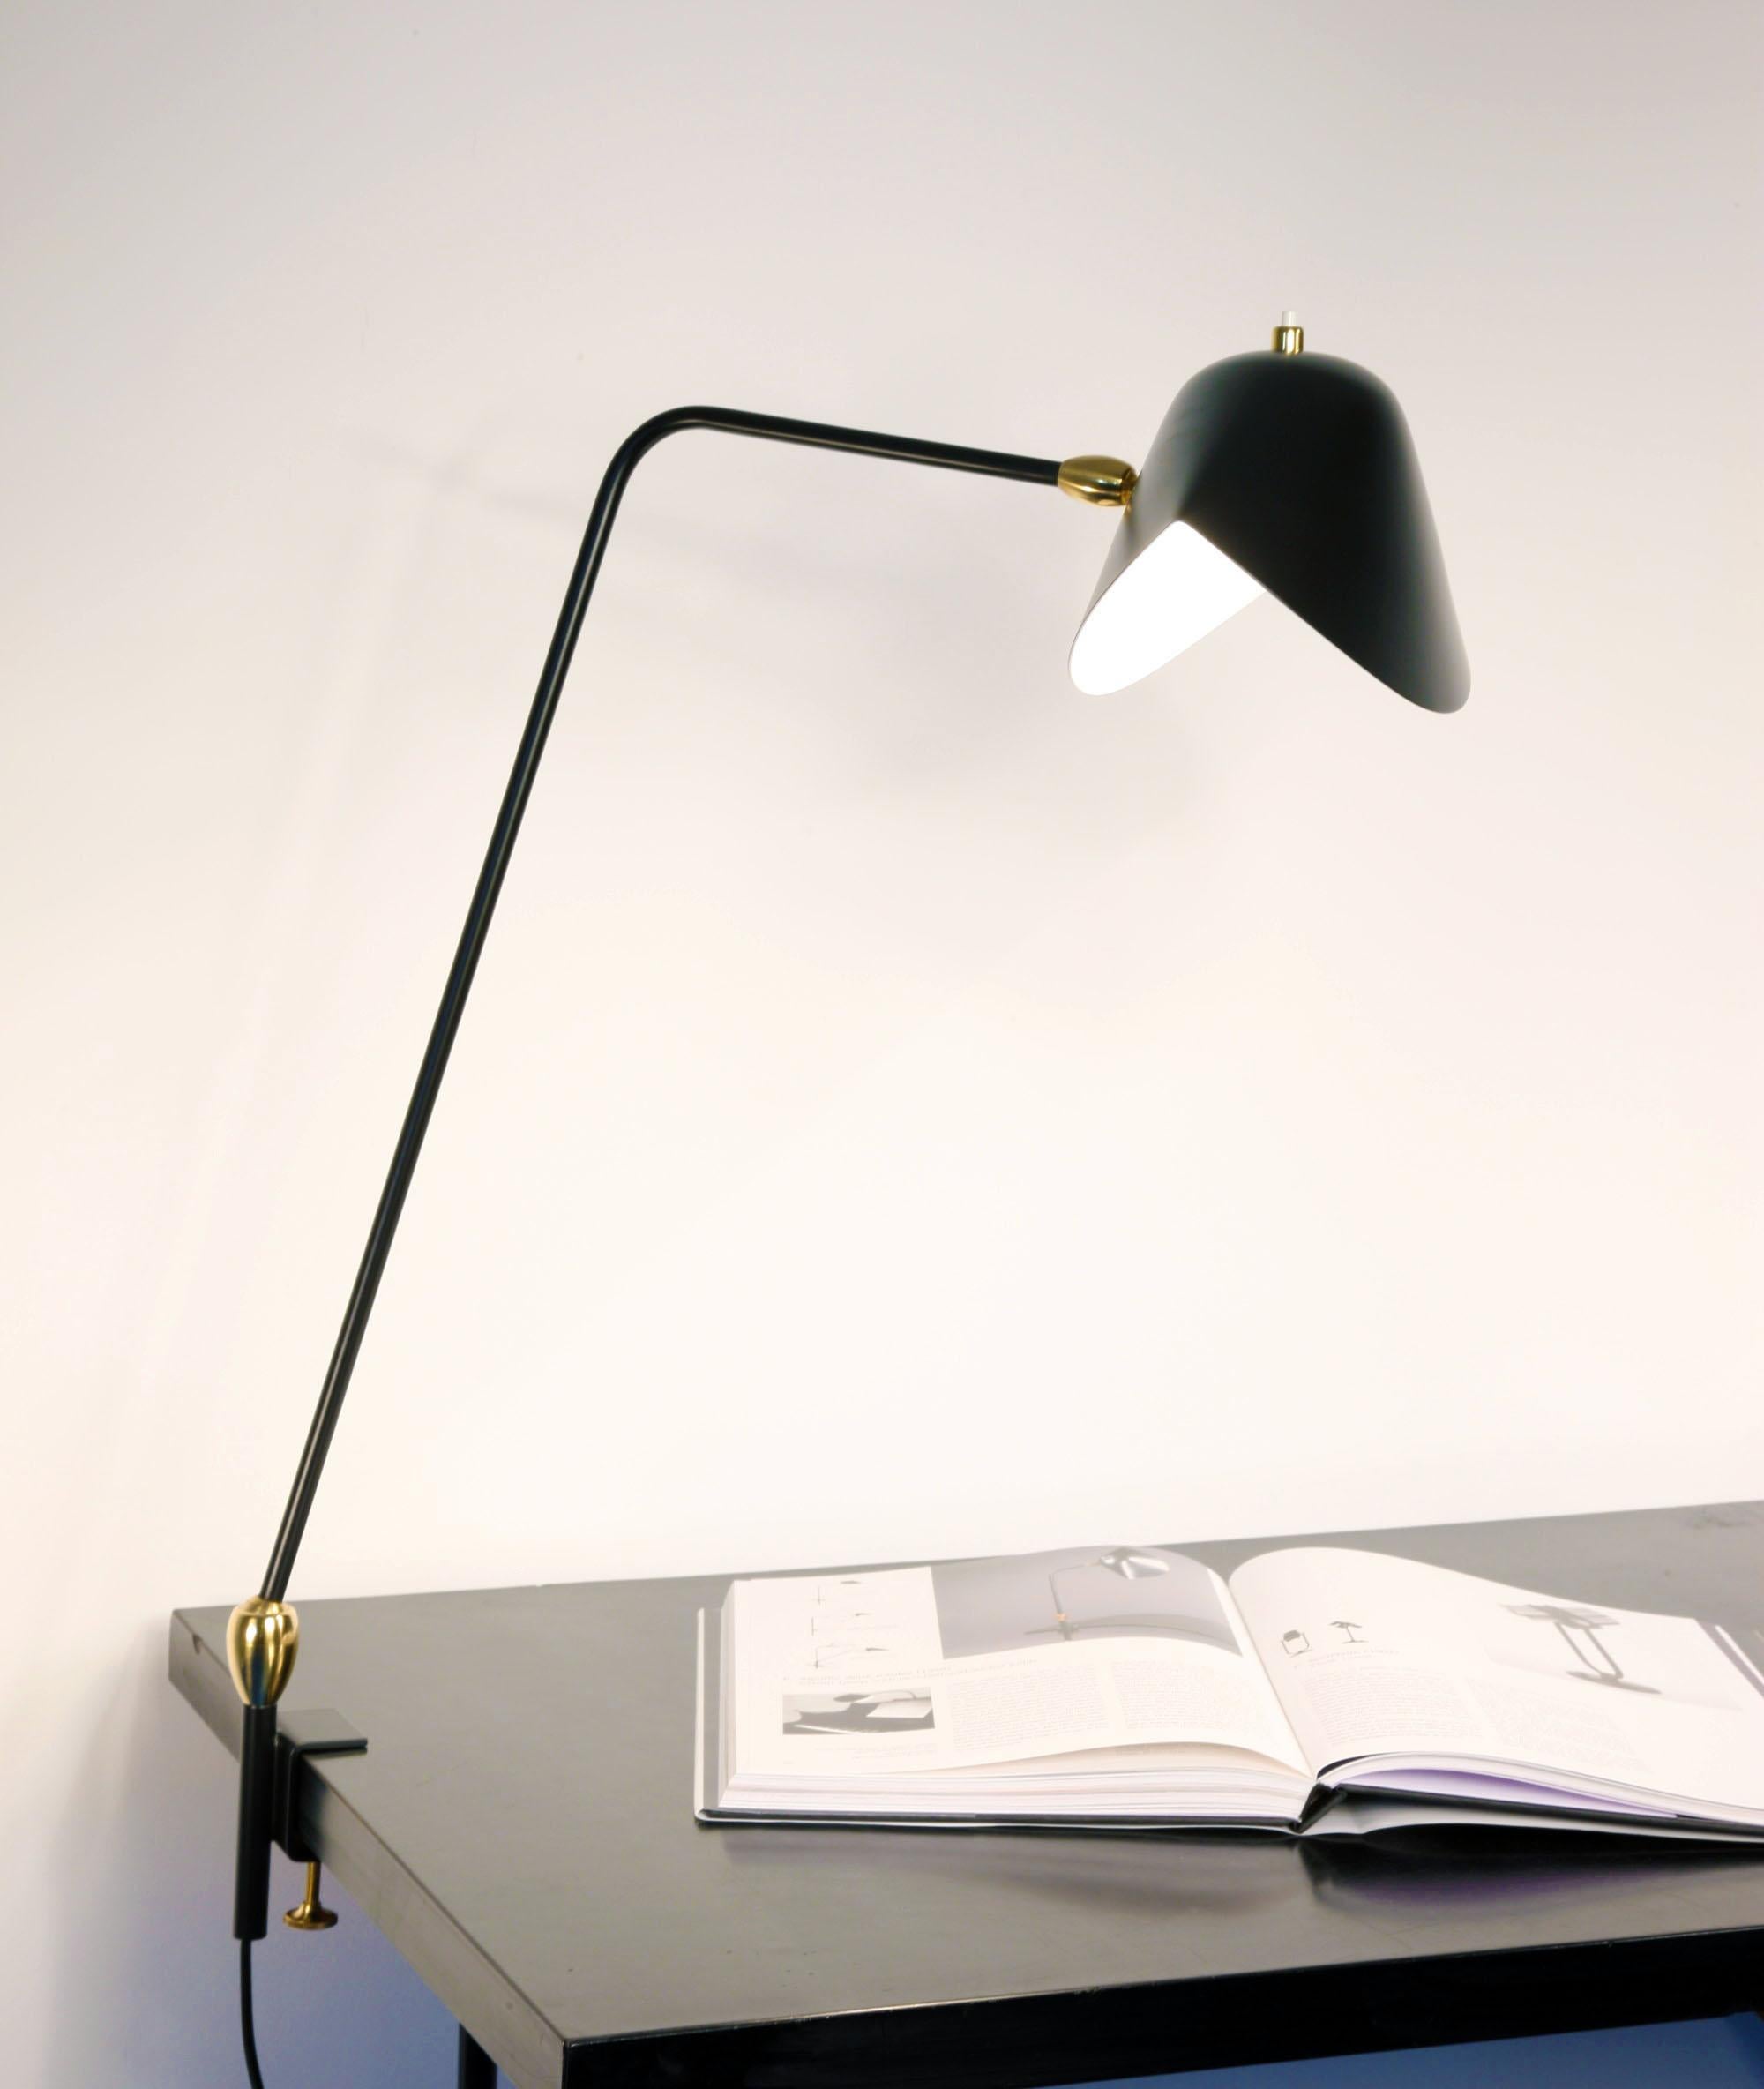 Avec une hauteur de 36 pouces, cette lampe ajustable peut se fixer sur de nombreuses surfaces et fournir un éclairage direct là où c'est nécessaire.

Des rotules en laiton relient les abat-jour.

Personnalisation
Aucune personnalisation n'est